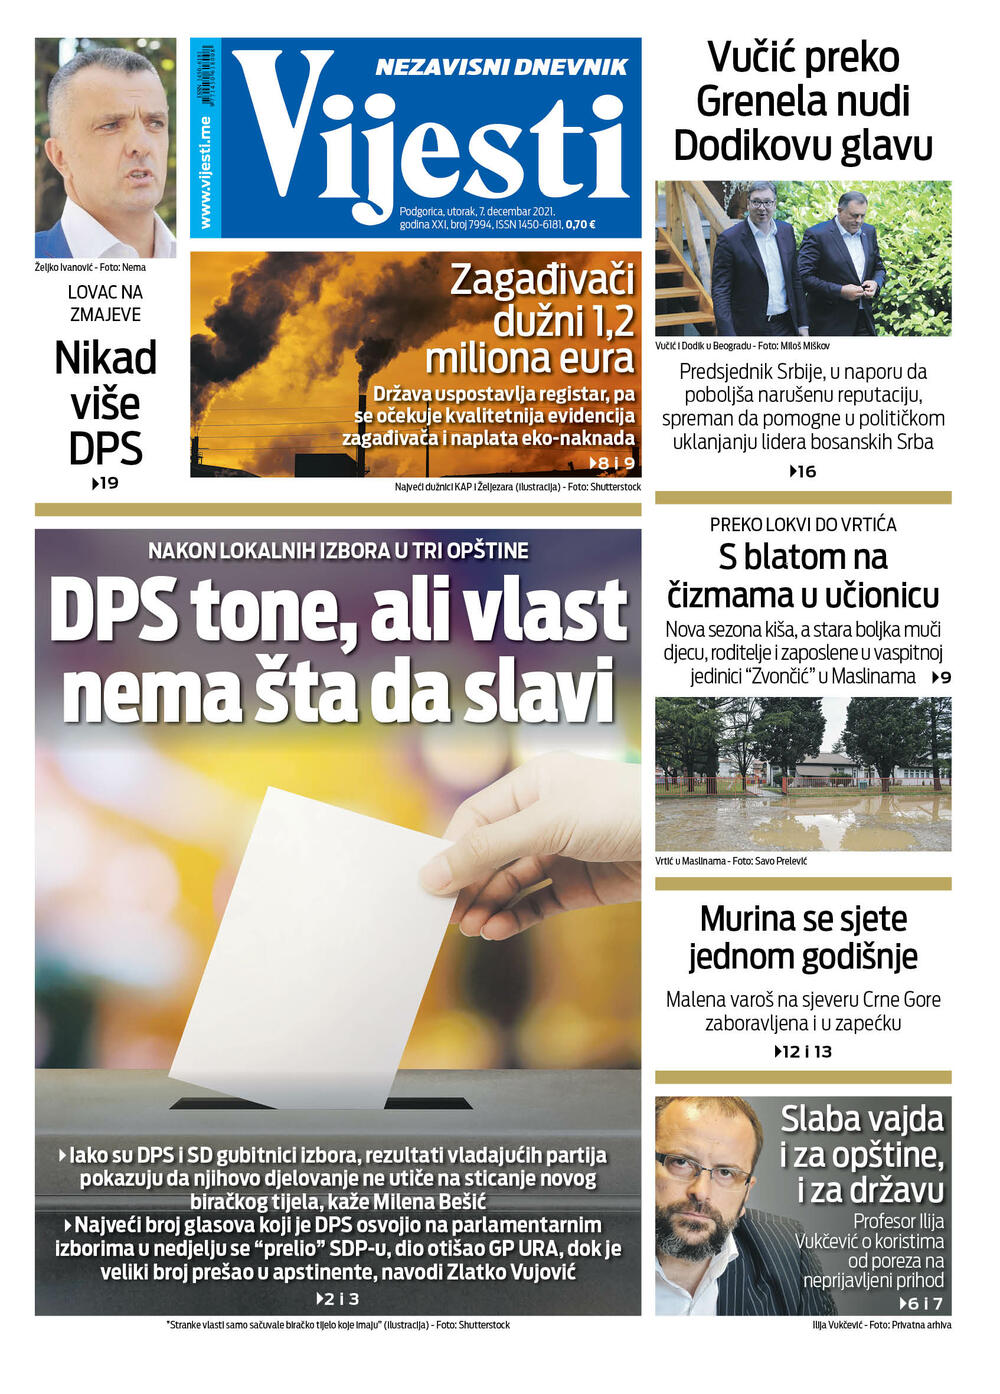 Naslovna strana "Vijesti" za 7. 12.2021., Foto: Vijesti